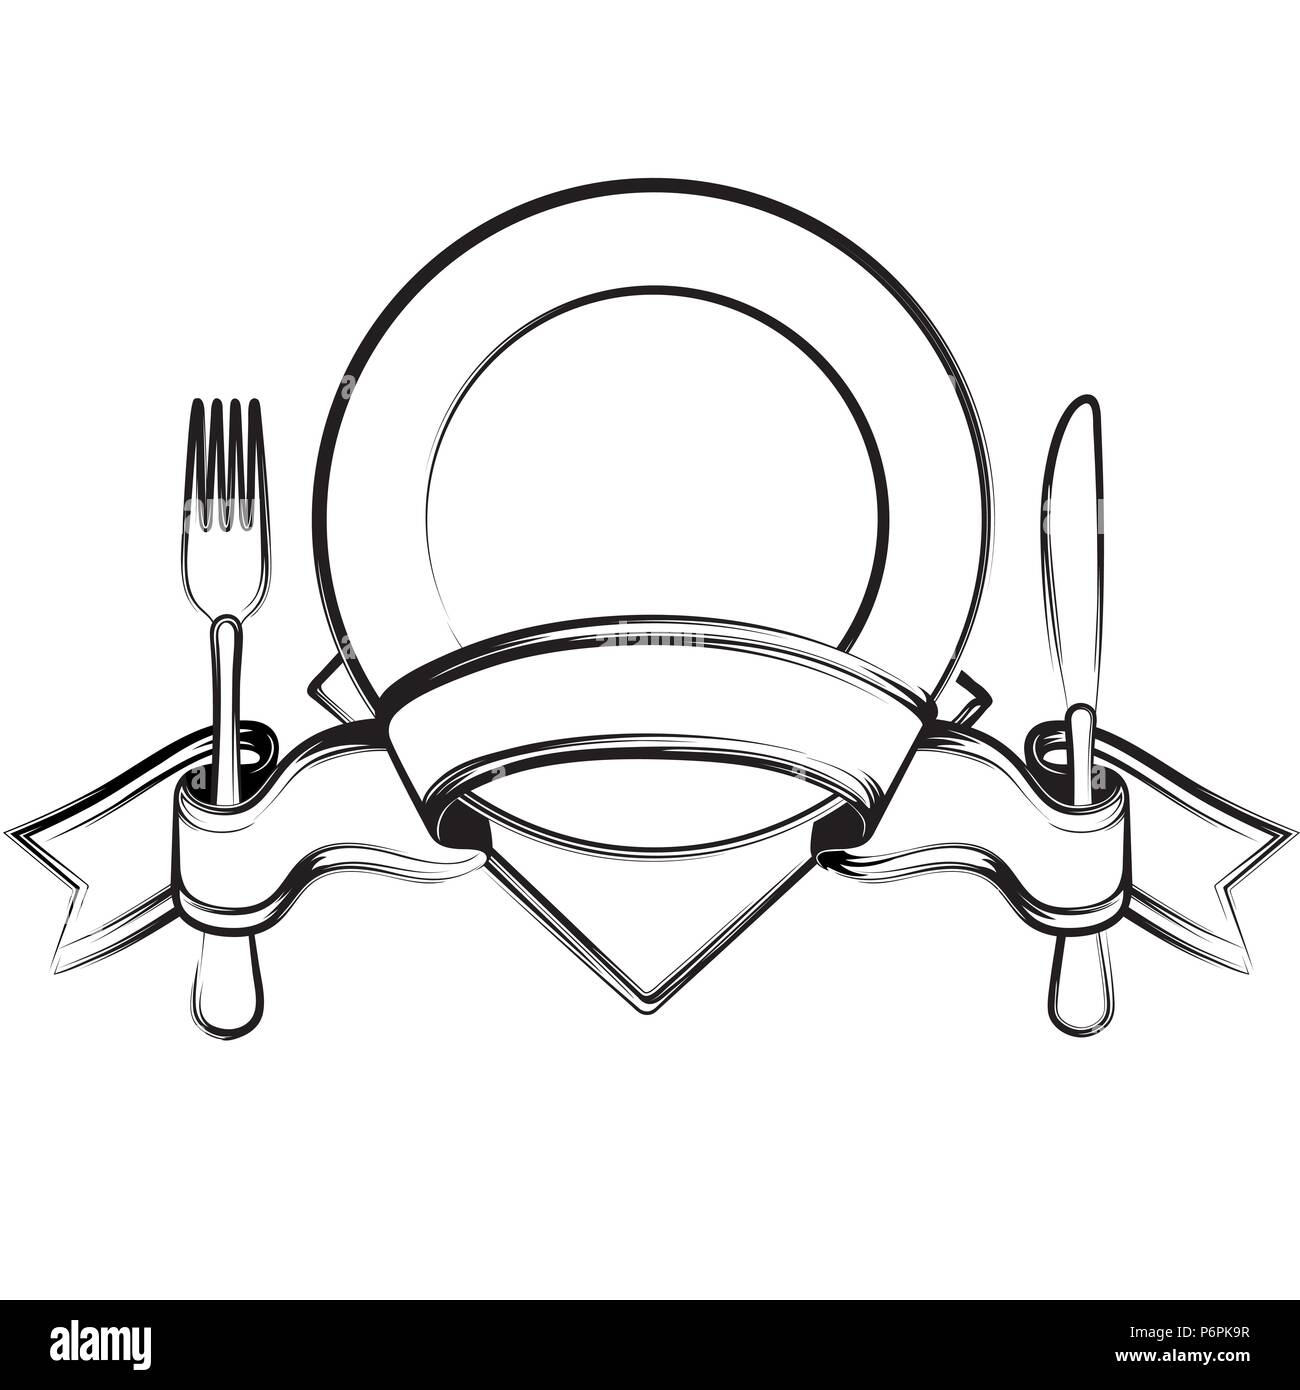 La plaque vide avec ruban, cuillère, fourchette et couteau sur un fond blanc.Le noir et blanc Illustration de Vecteur